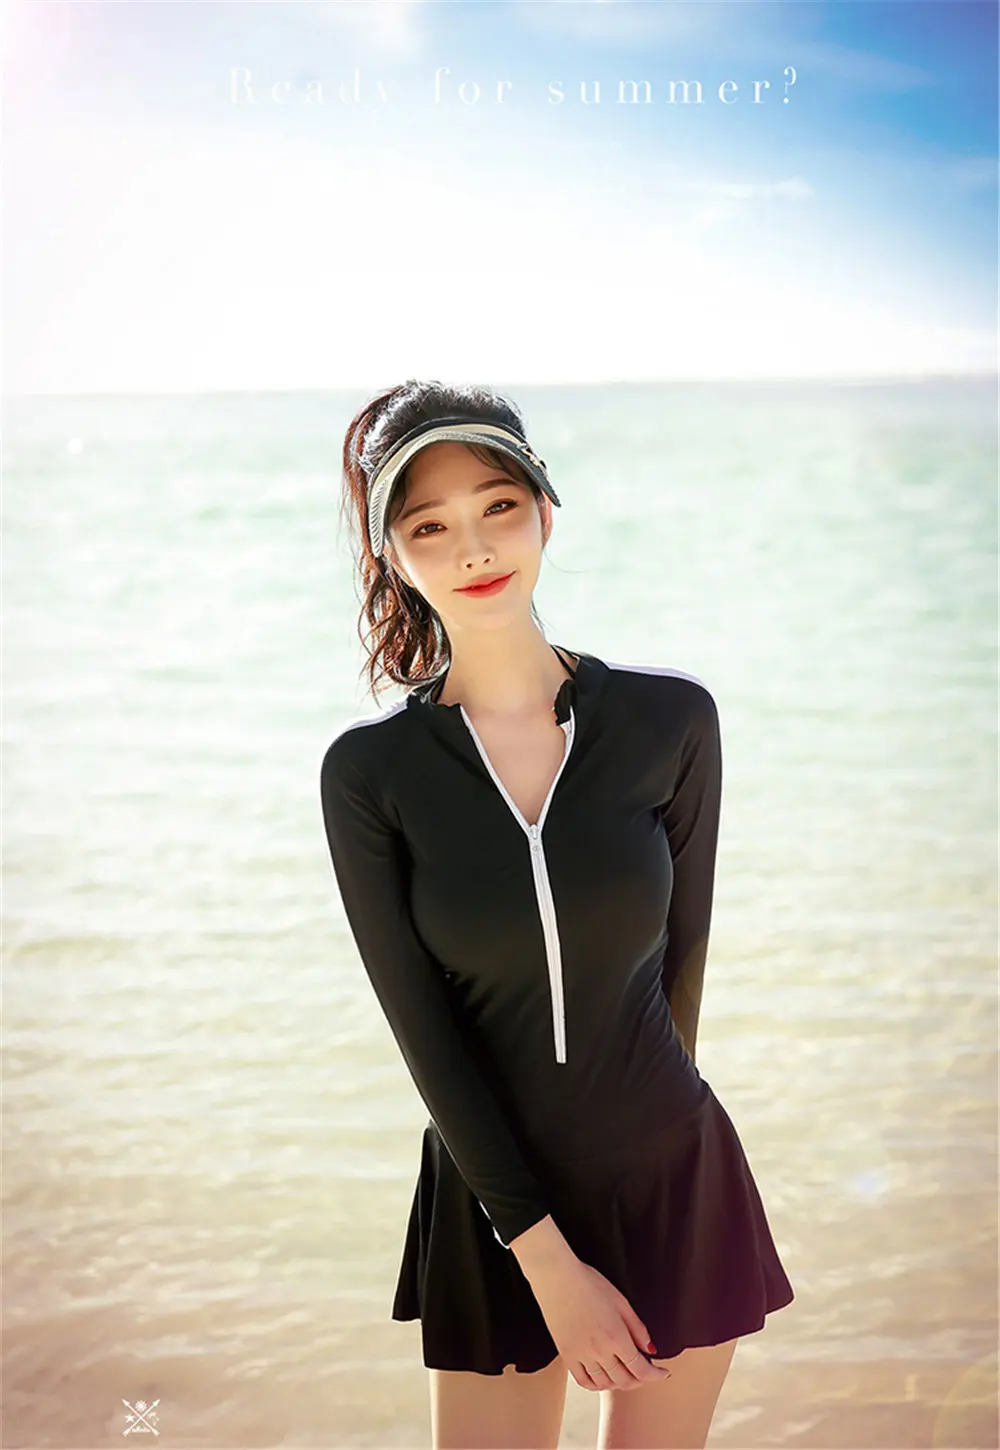 Skirted rhguard женский длинный рукав цельный купальный костюм плотная одежда для купания УФ Защита сёрфинга одежда молния Дайвинг рубашка черный коврик